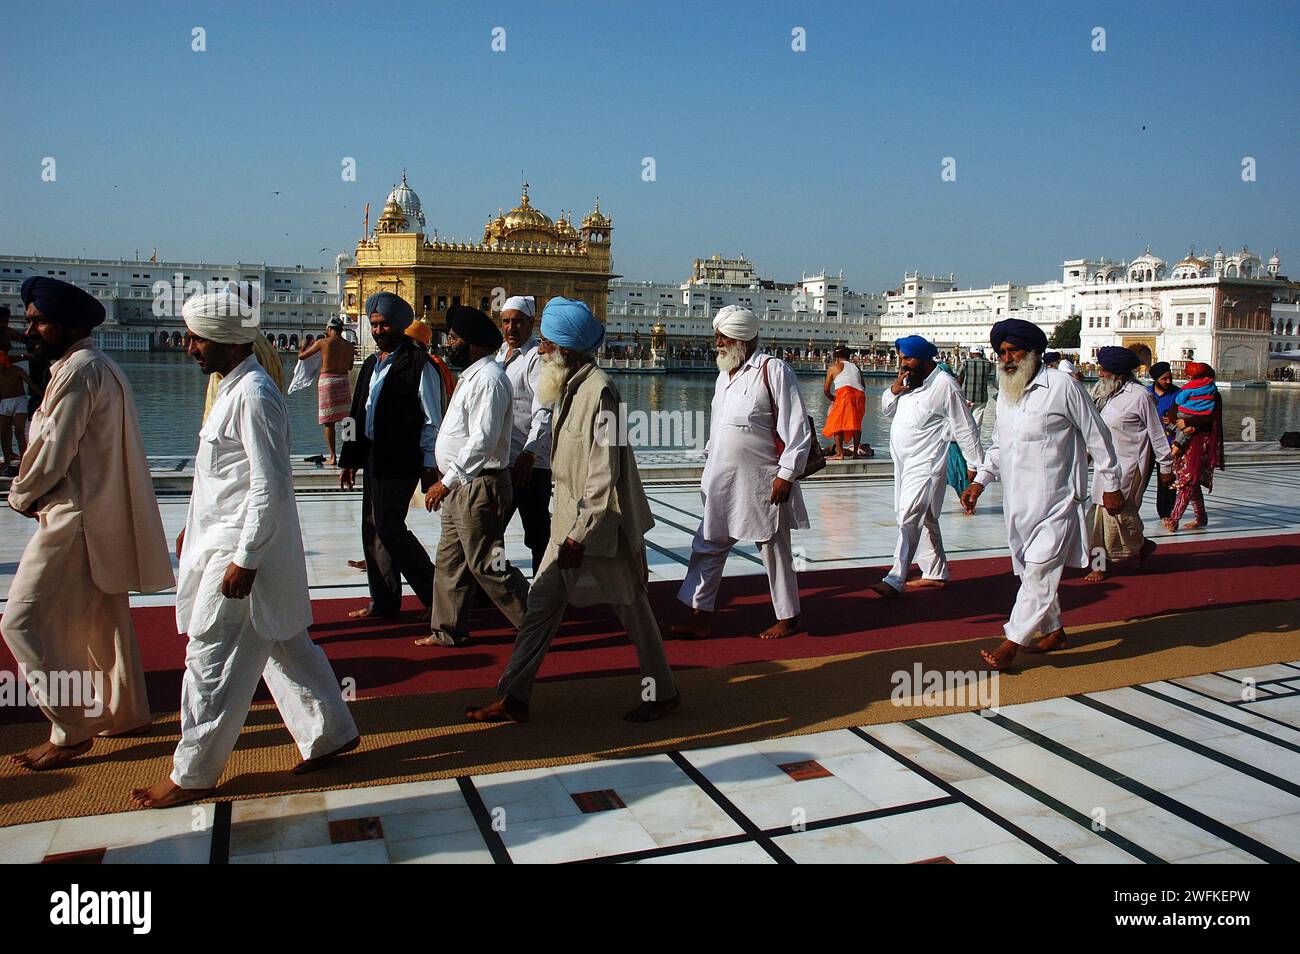 Le Harmandir Sahib (ou Hari Mandir) à Amritsar, au Pendjab, est le sanctuaire le plus sacré du Sikhisme. Connu sous le nom de Temple d'Or, il a été officiellement renommé Harmandir Sahib en mars 2005. Le temple (ou gurdwara) est une destination de pèlerinage majeure pour les Sikhs du monde entier, ainsi qu'une attraction touristique de plus en plus populaire. Le temple glorieux est un exemple vivant de l'esprit de tolérance et d'acceptation que proclame la philosophie sikh. Amritsar, Punjab, Inde. Banque D'Images